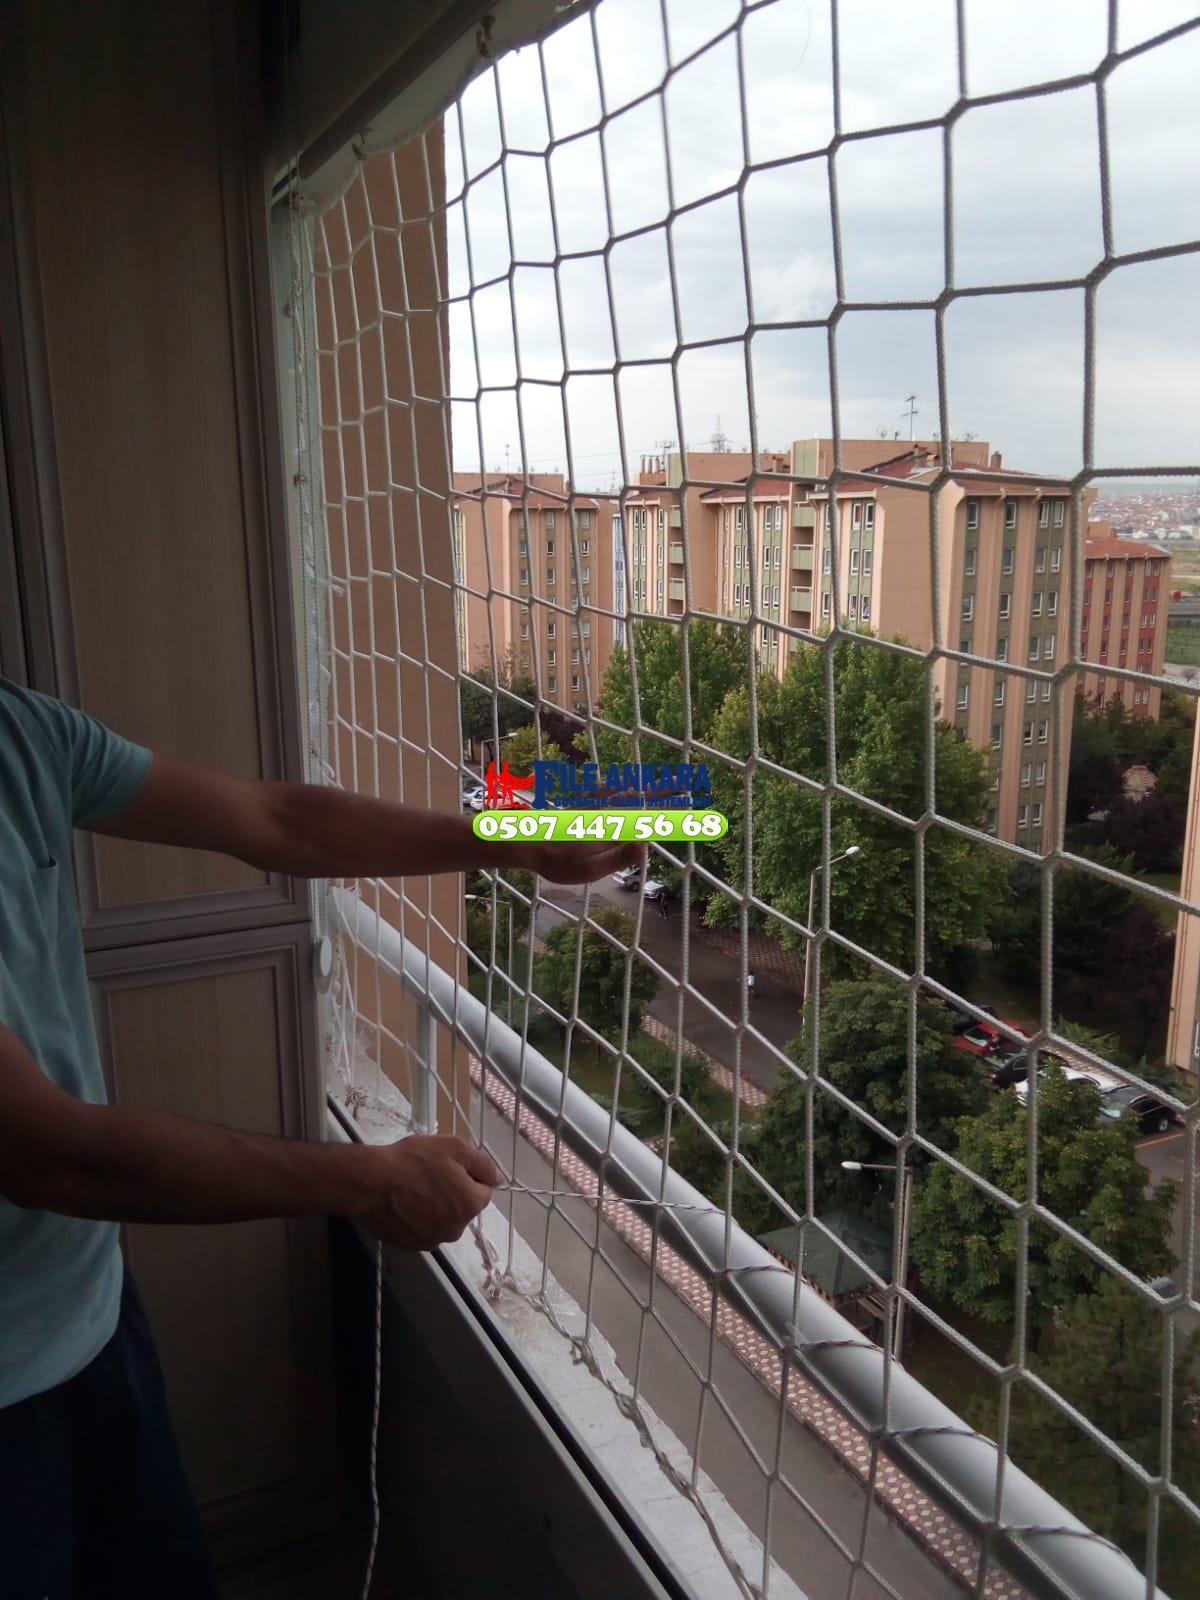 Ankara Nallıhan Balkon  koruma filesi - Merdiven filesi - En ucuz balkon güvenlik filesi satış ve montajı 0507 447 56 68